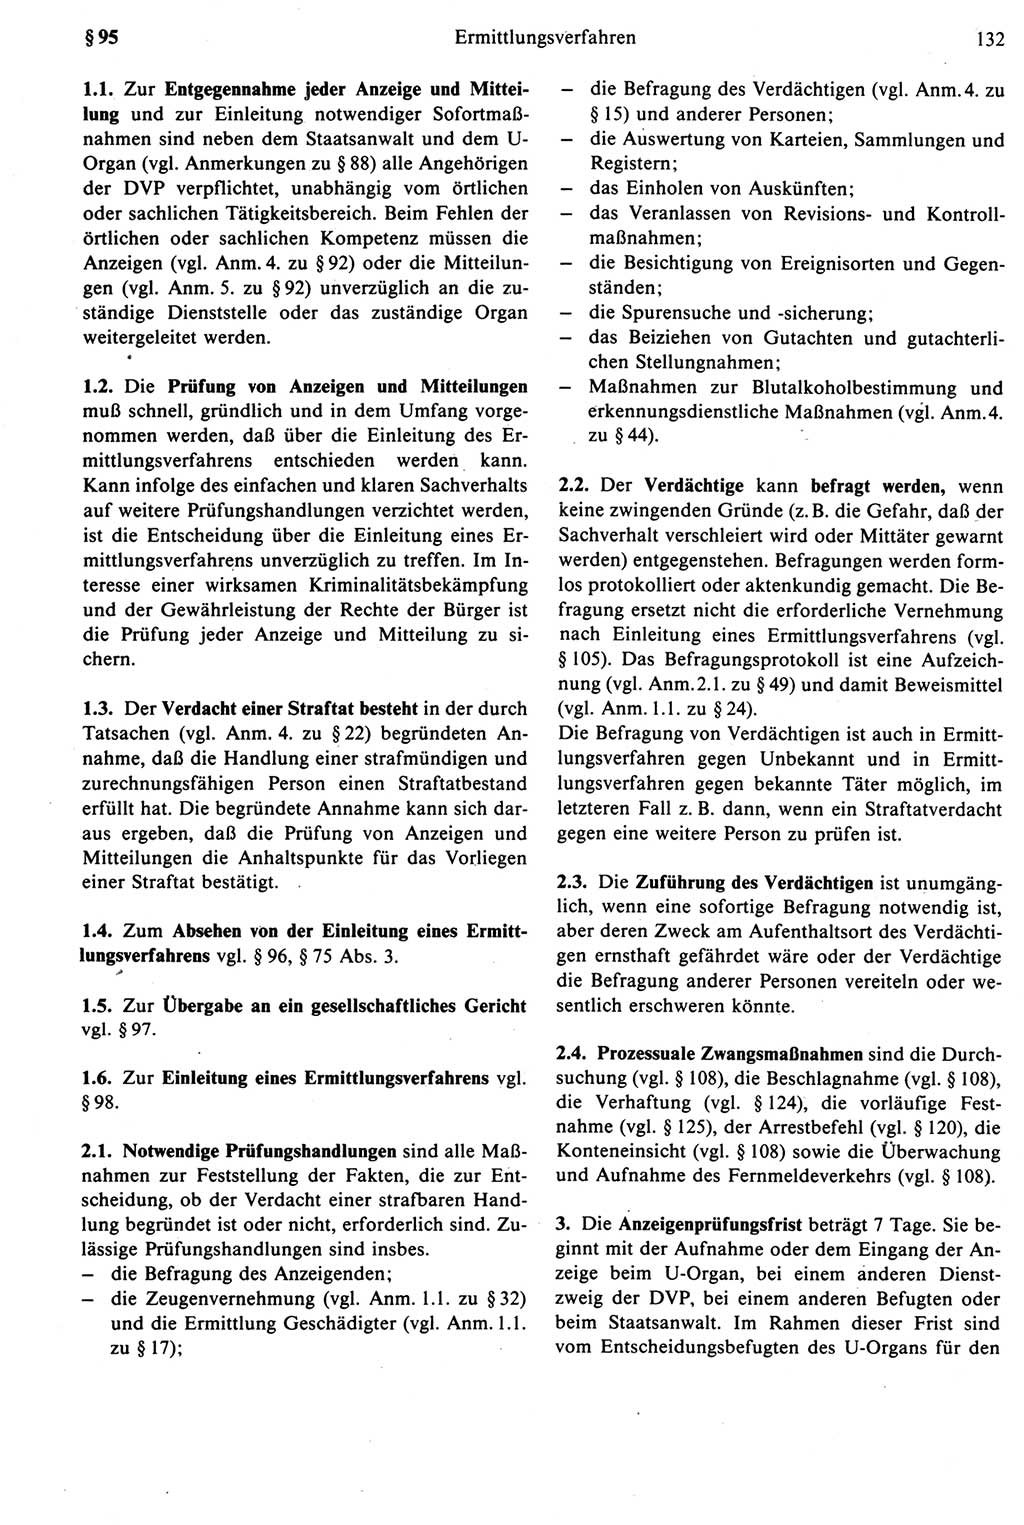 Strafprozeßrecht der DDR [Deutsche Demokratische Republik], Kommentar zur Strafprozeßordnung (StPO) 1987, Seite 132 (Strafprozeßr. DDR Komm. StPO 1987, S. 132)